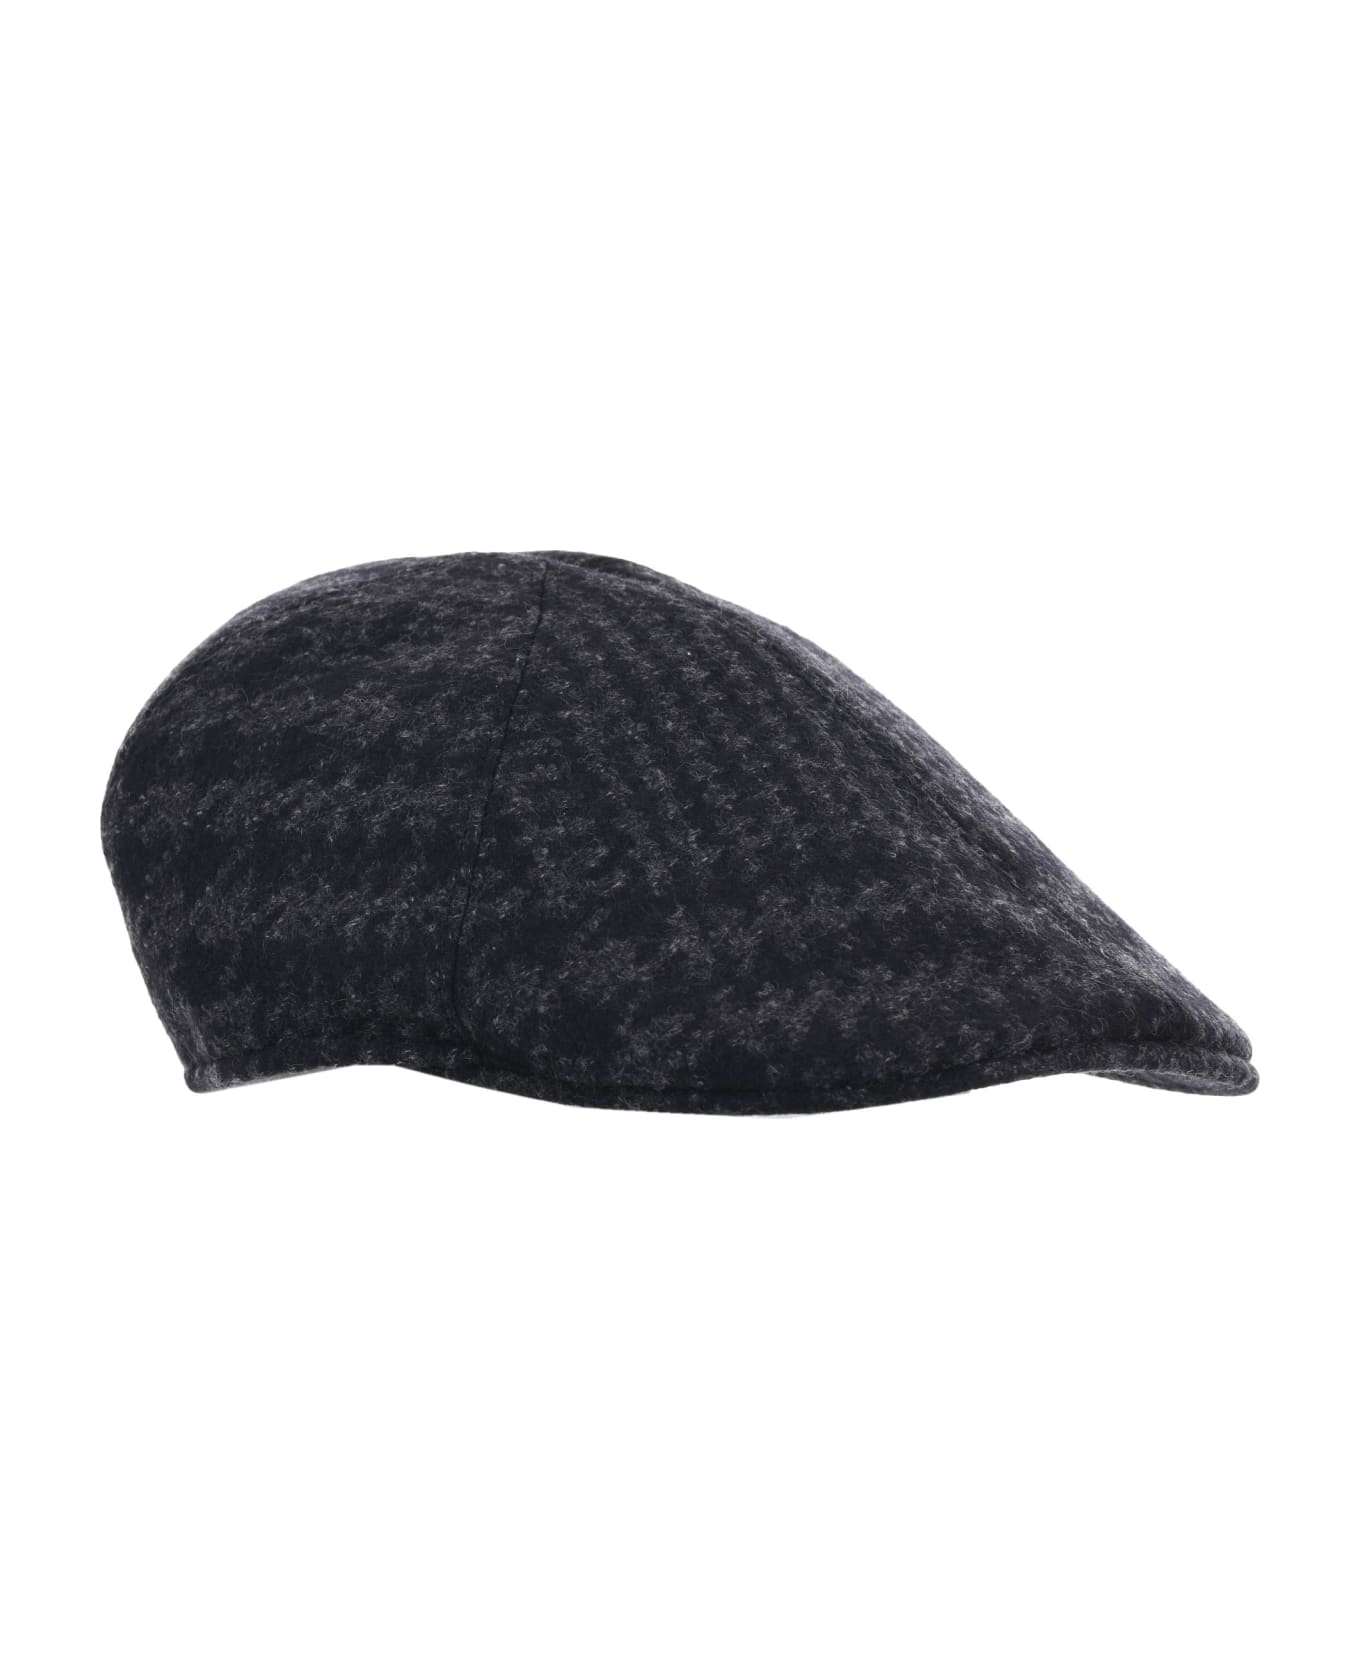 Tagliatore Flat Cap - Nero/grigio scuro 帽子